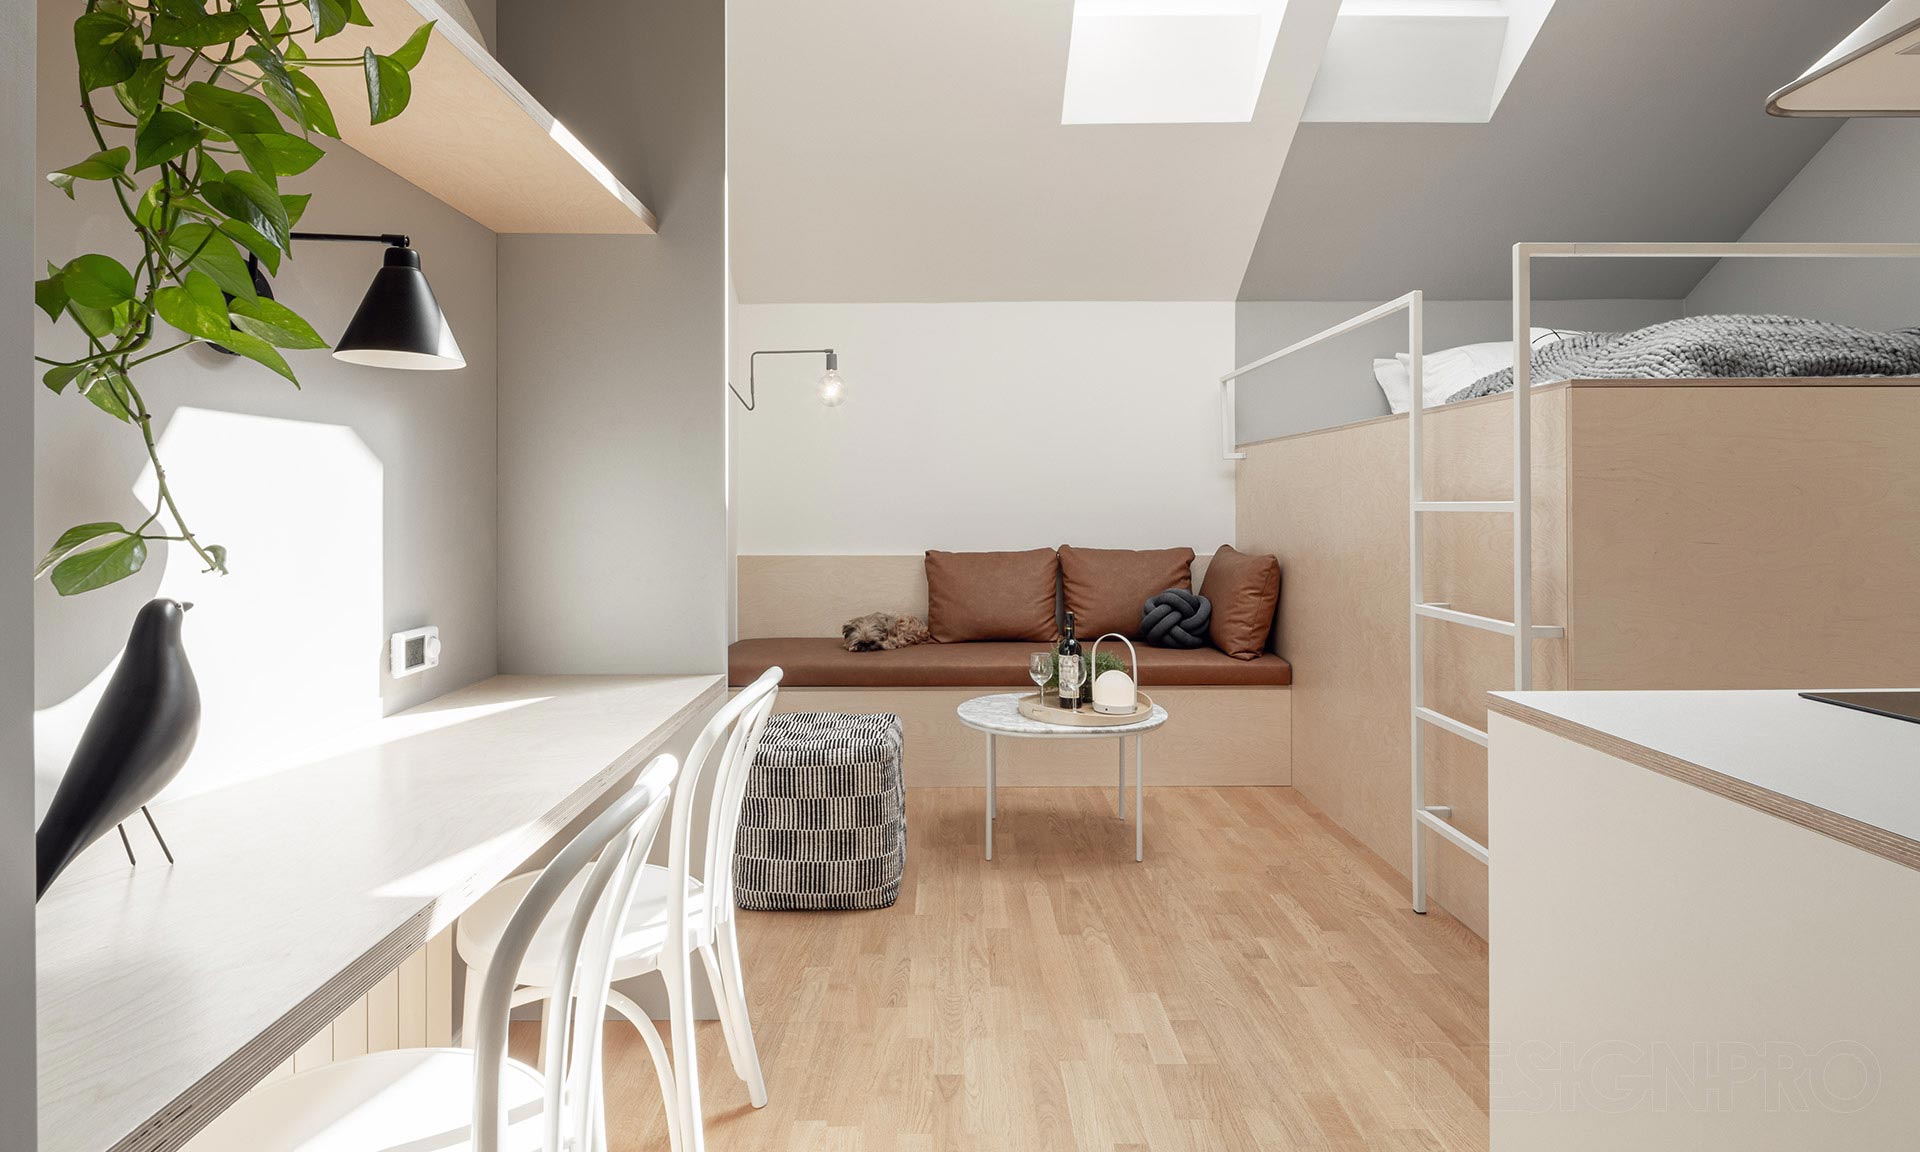 Miniaturní byt v Praze má jen 23 metrů čtverečních a z postele výhled na Prahu